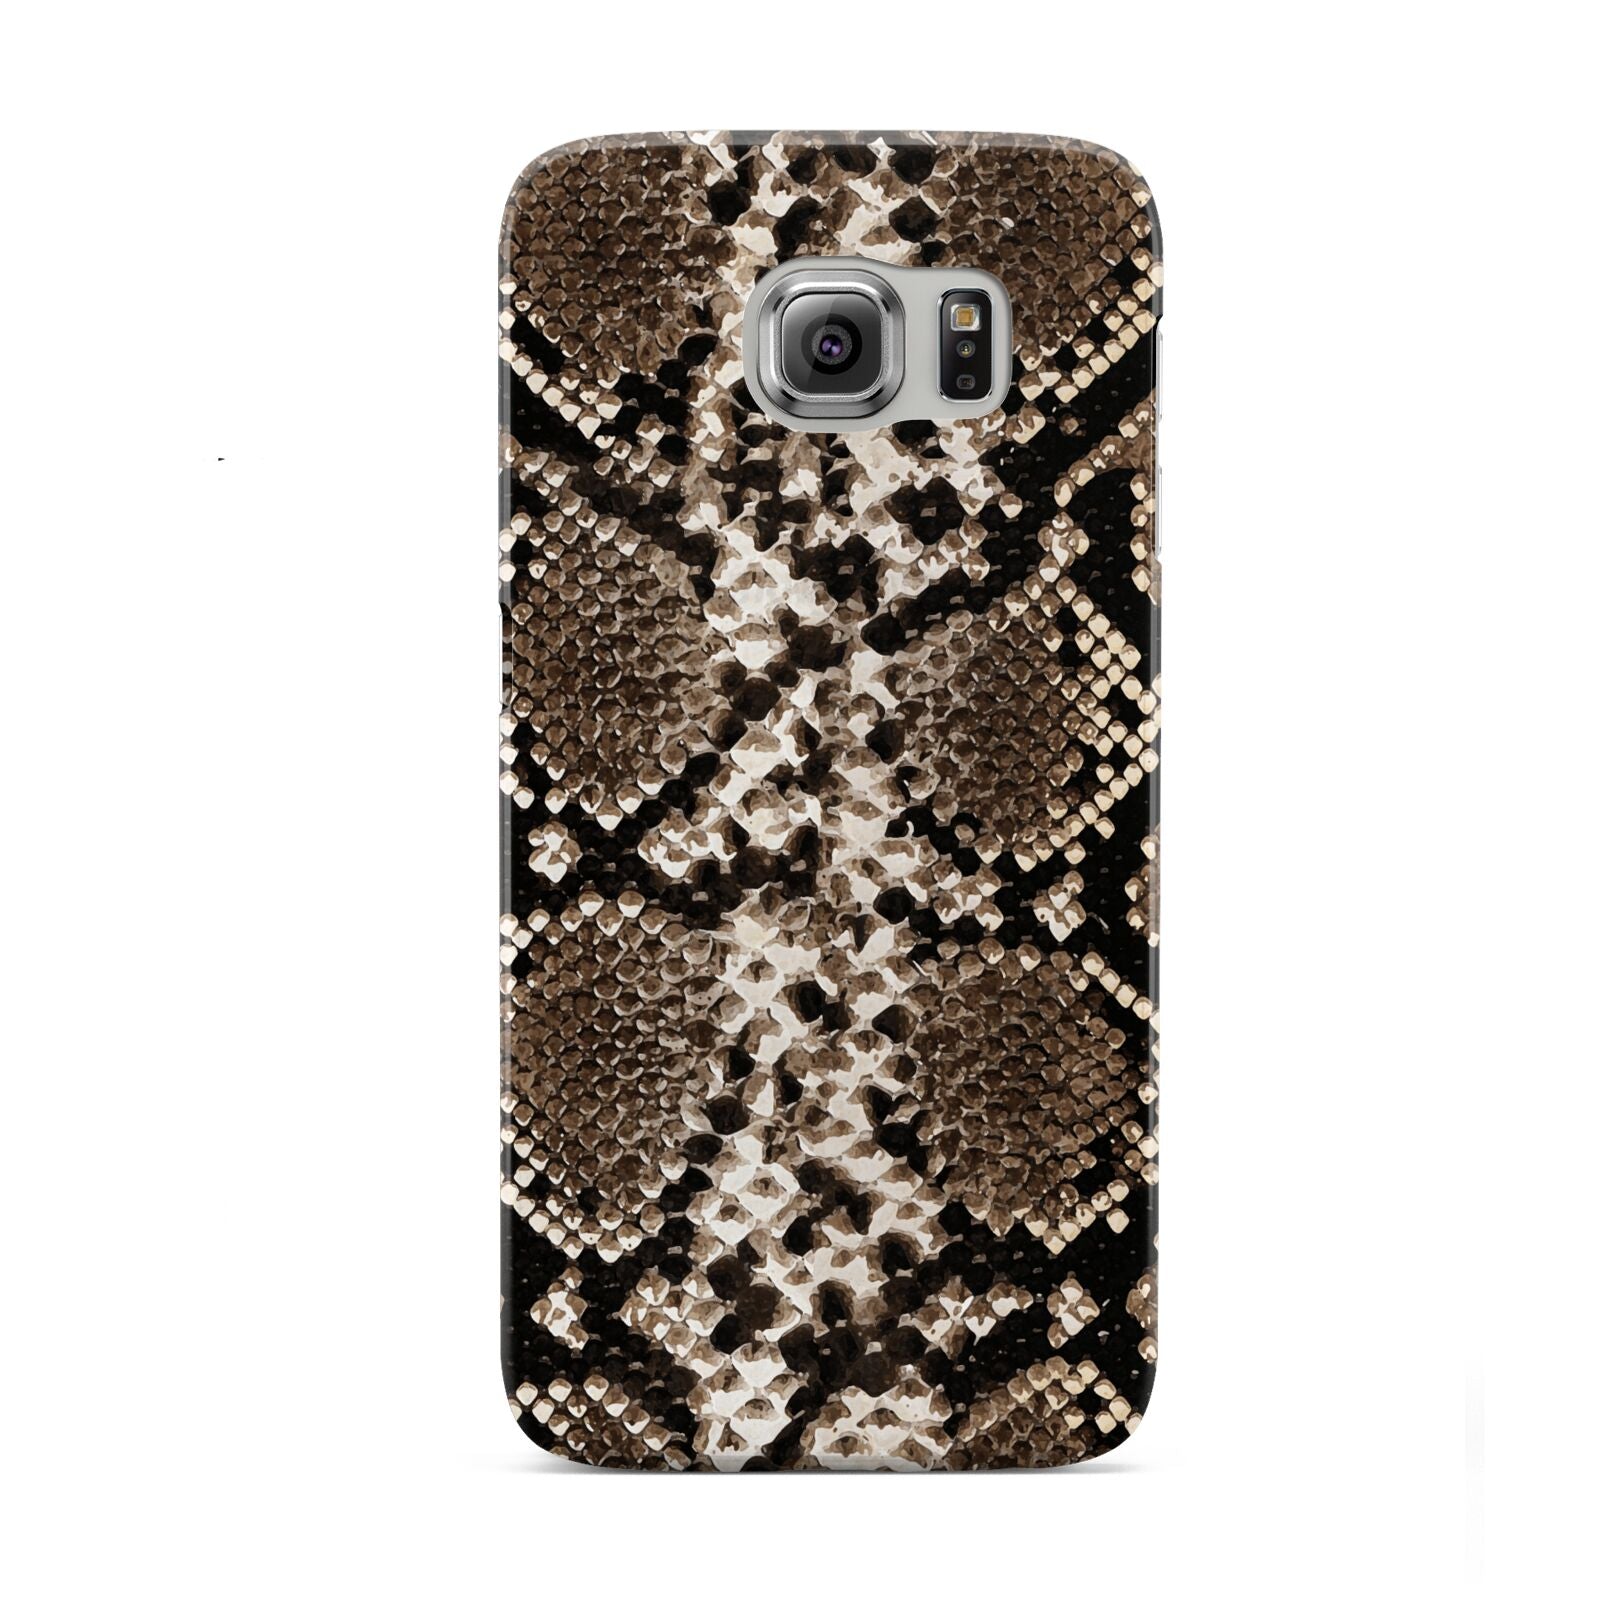 Snakeskin Pattern Samsung Galaxy S6 Case